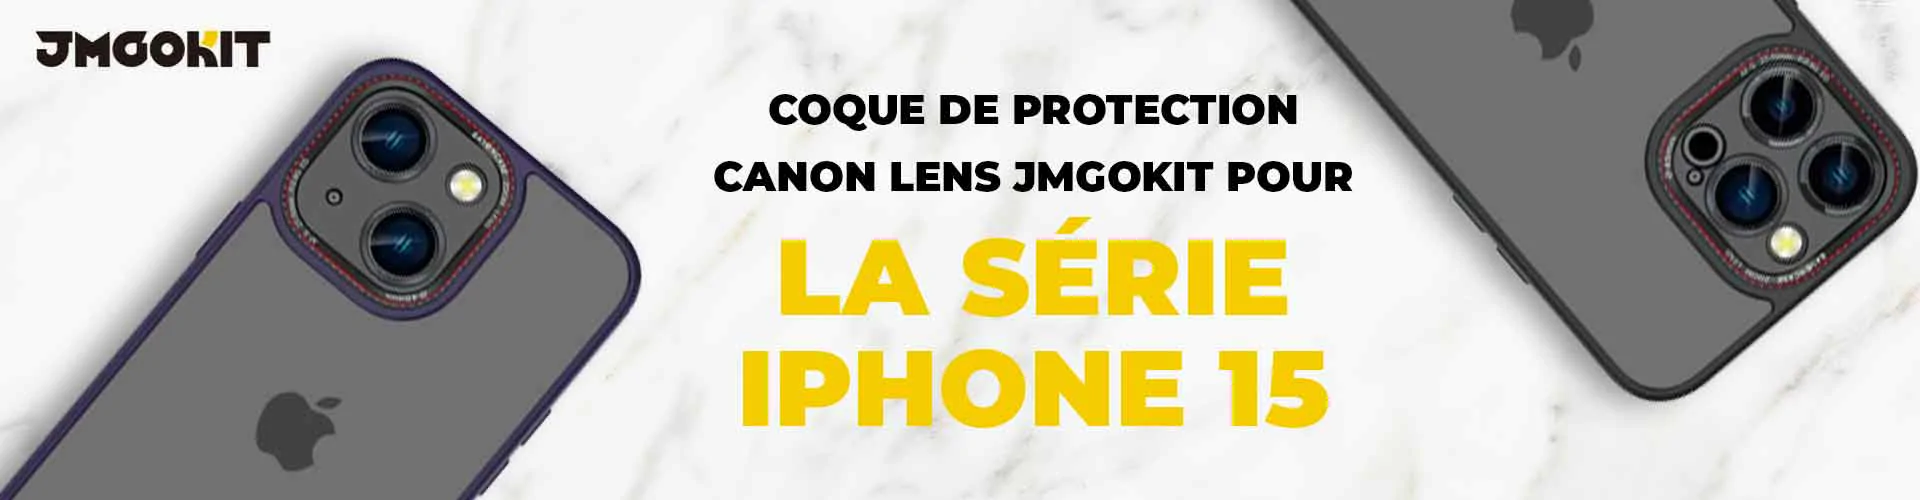 Coque de Protection Canon Lens JMGOKIT pour la série iphone 15